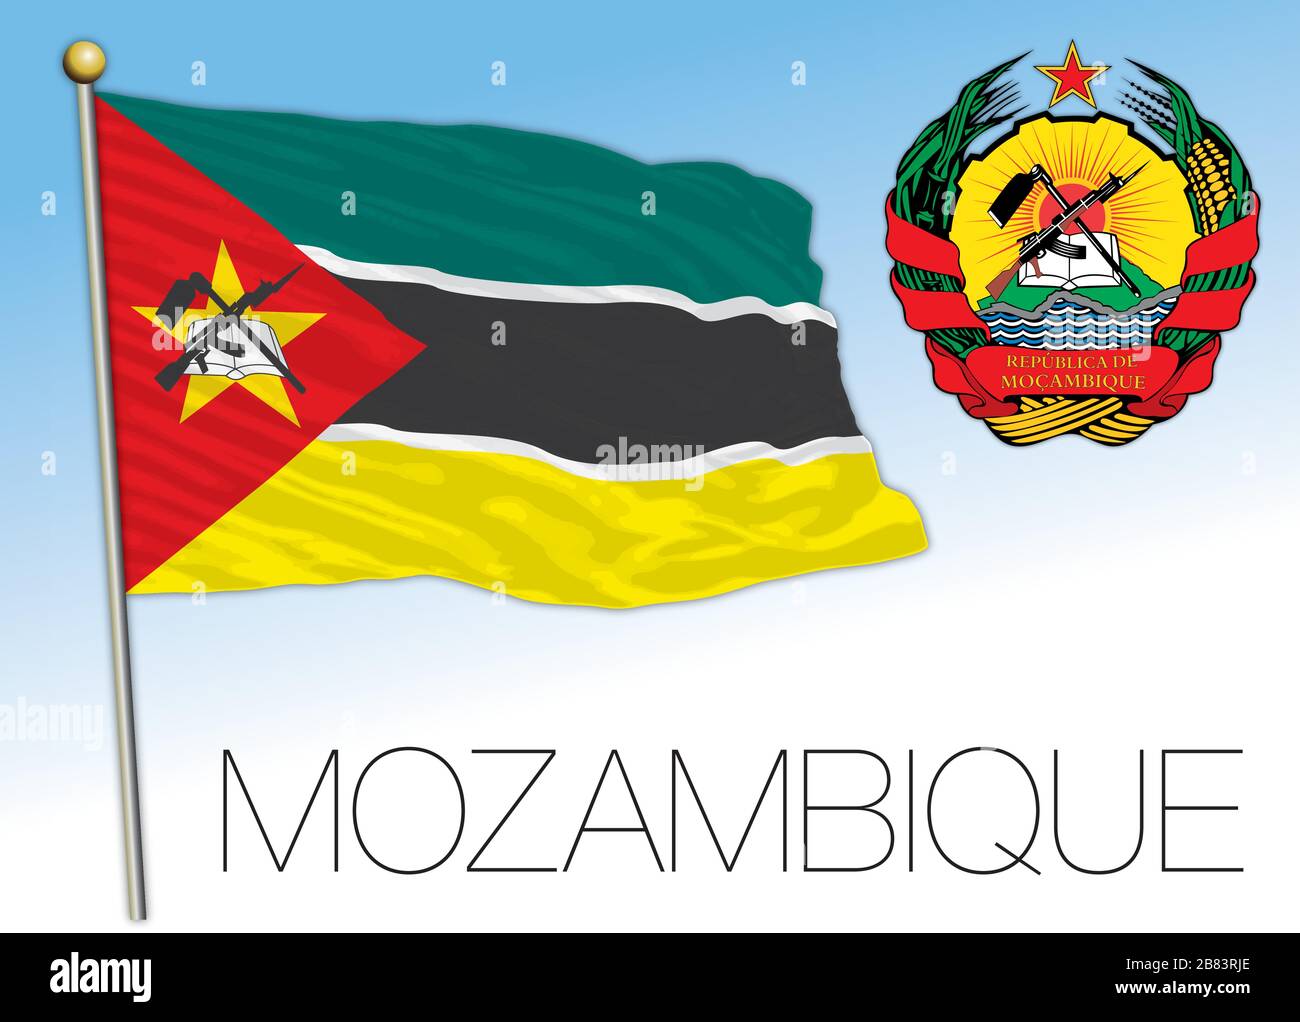 Mozambique bandera nacional oficial y escudo de armas, áfrica, ilustración vectorial Ilustración del Vector